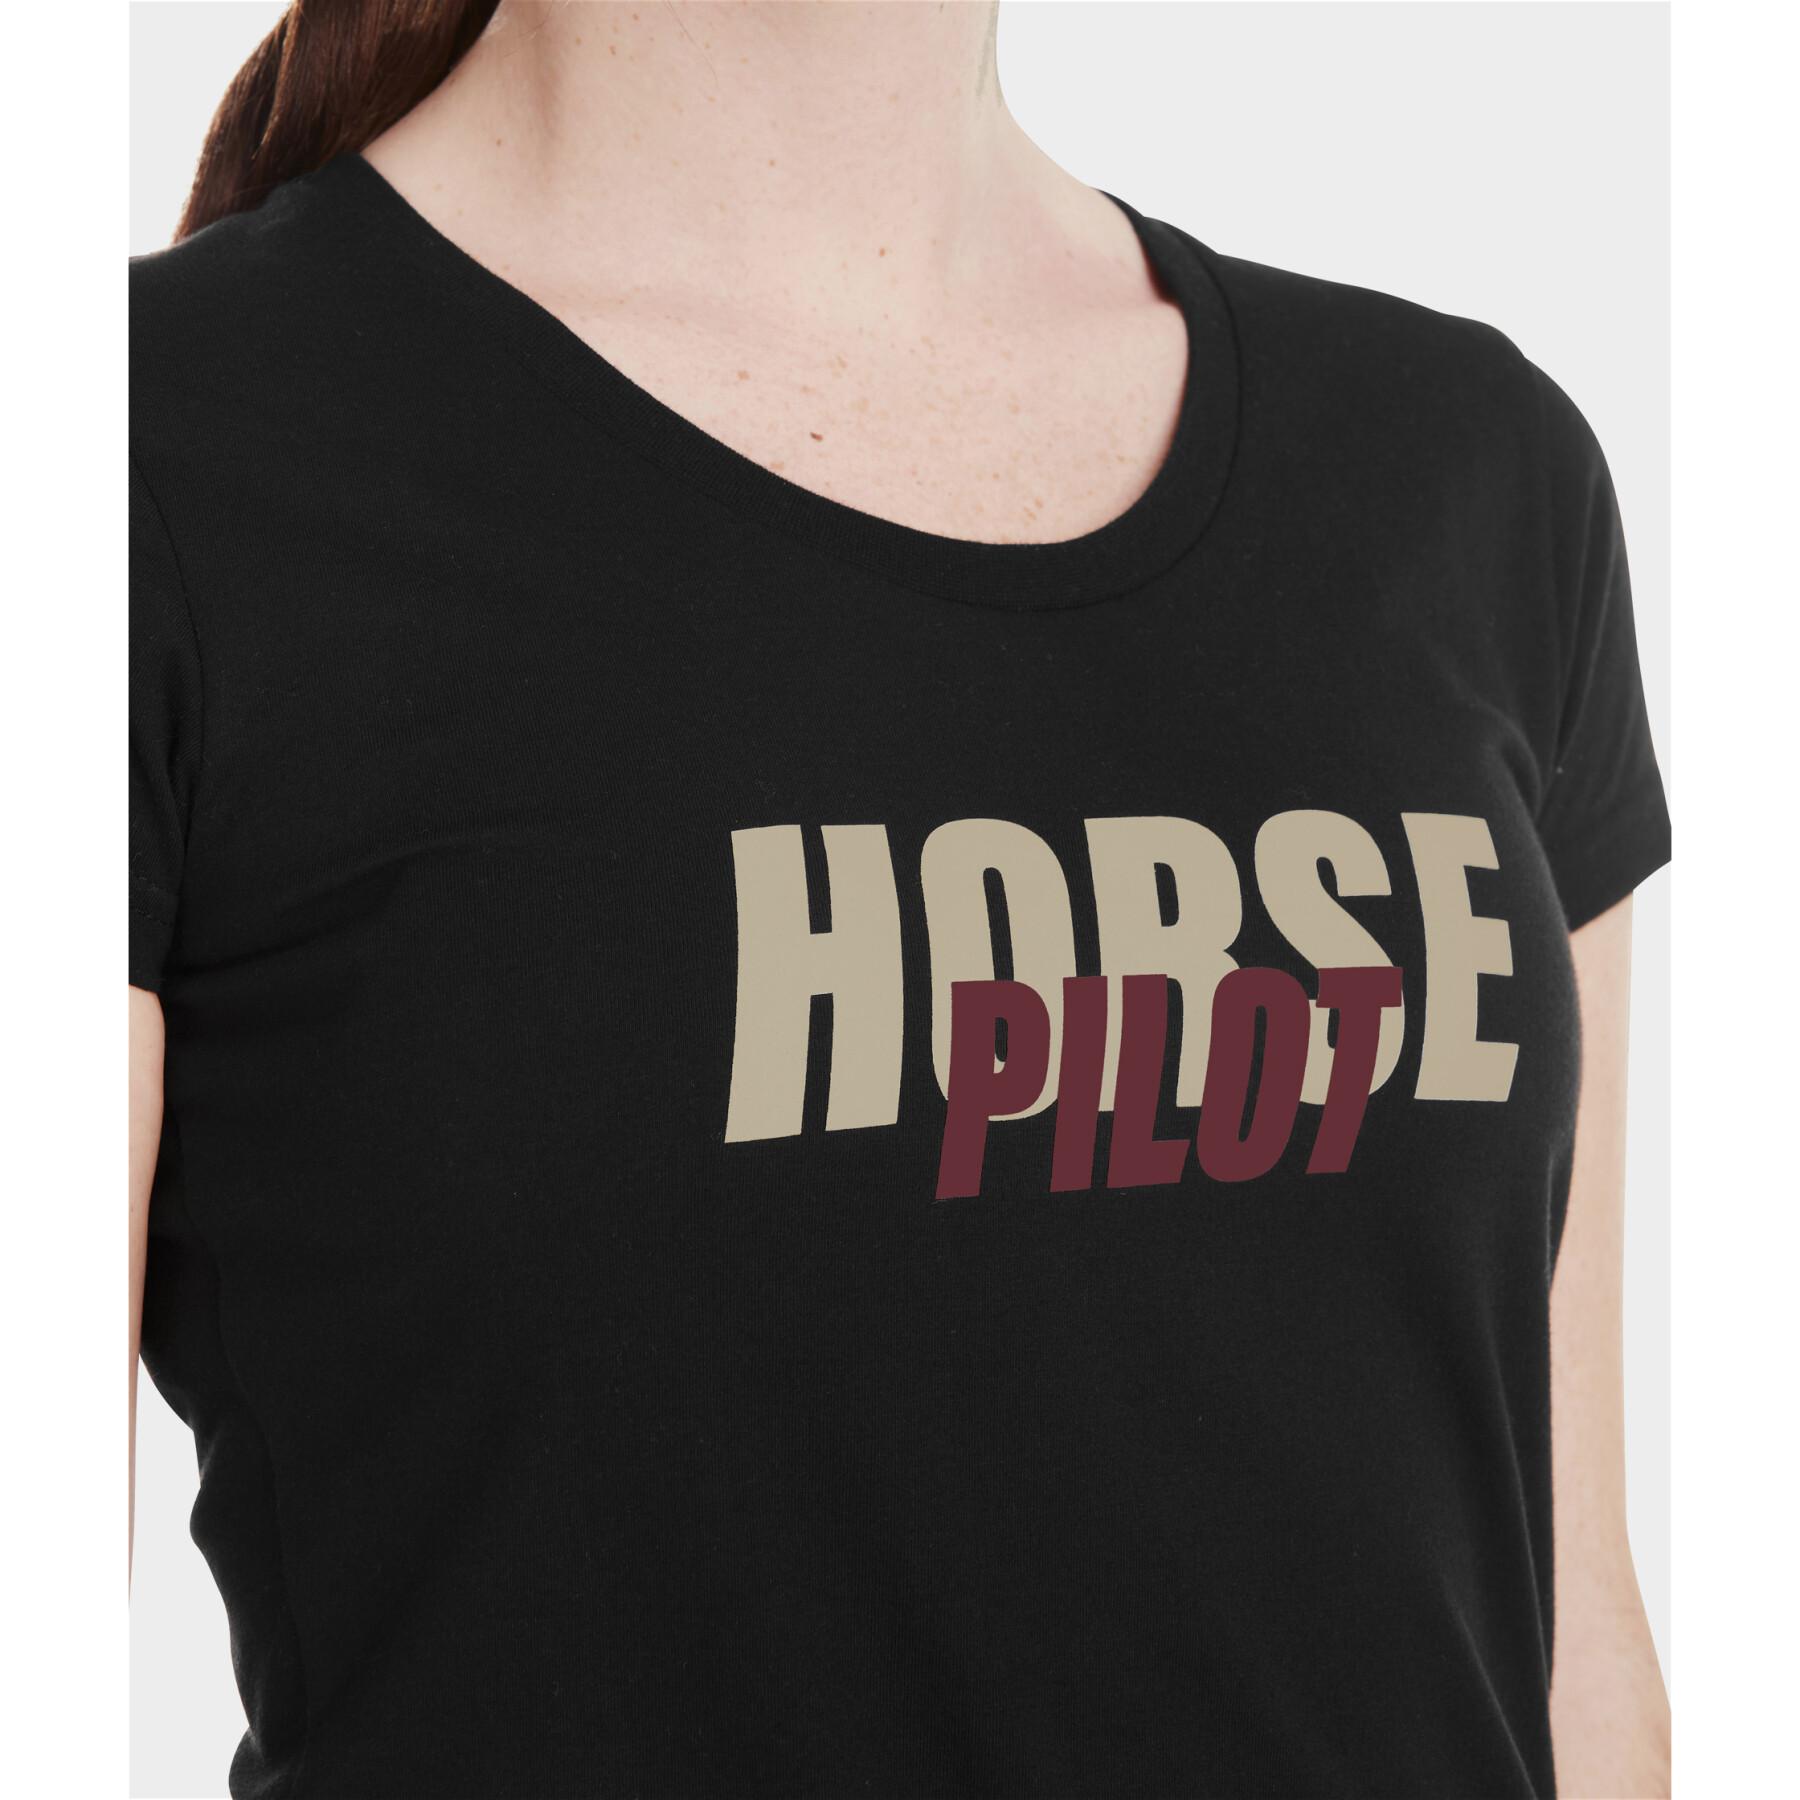 T-shirt femme Horse Pilot Team